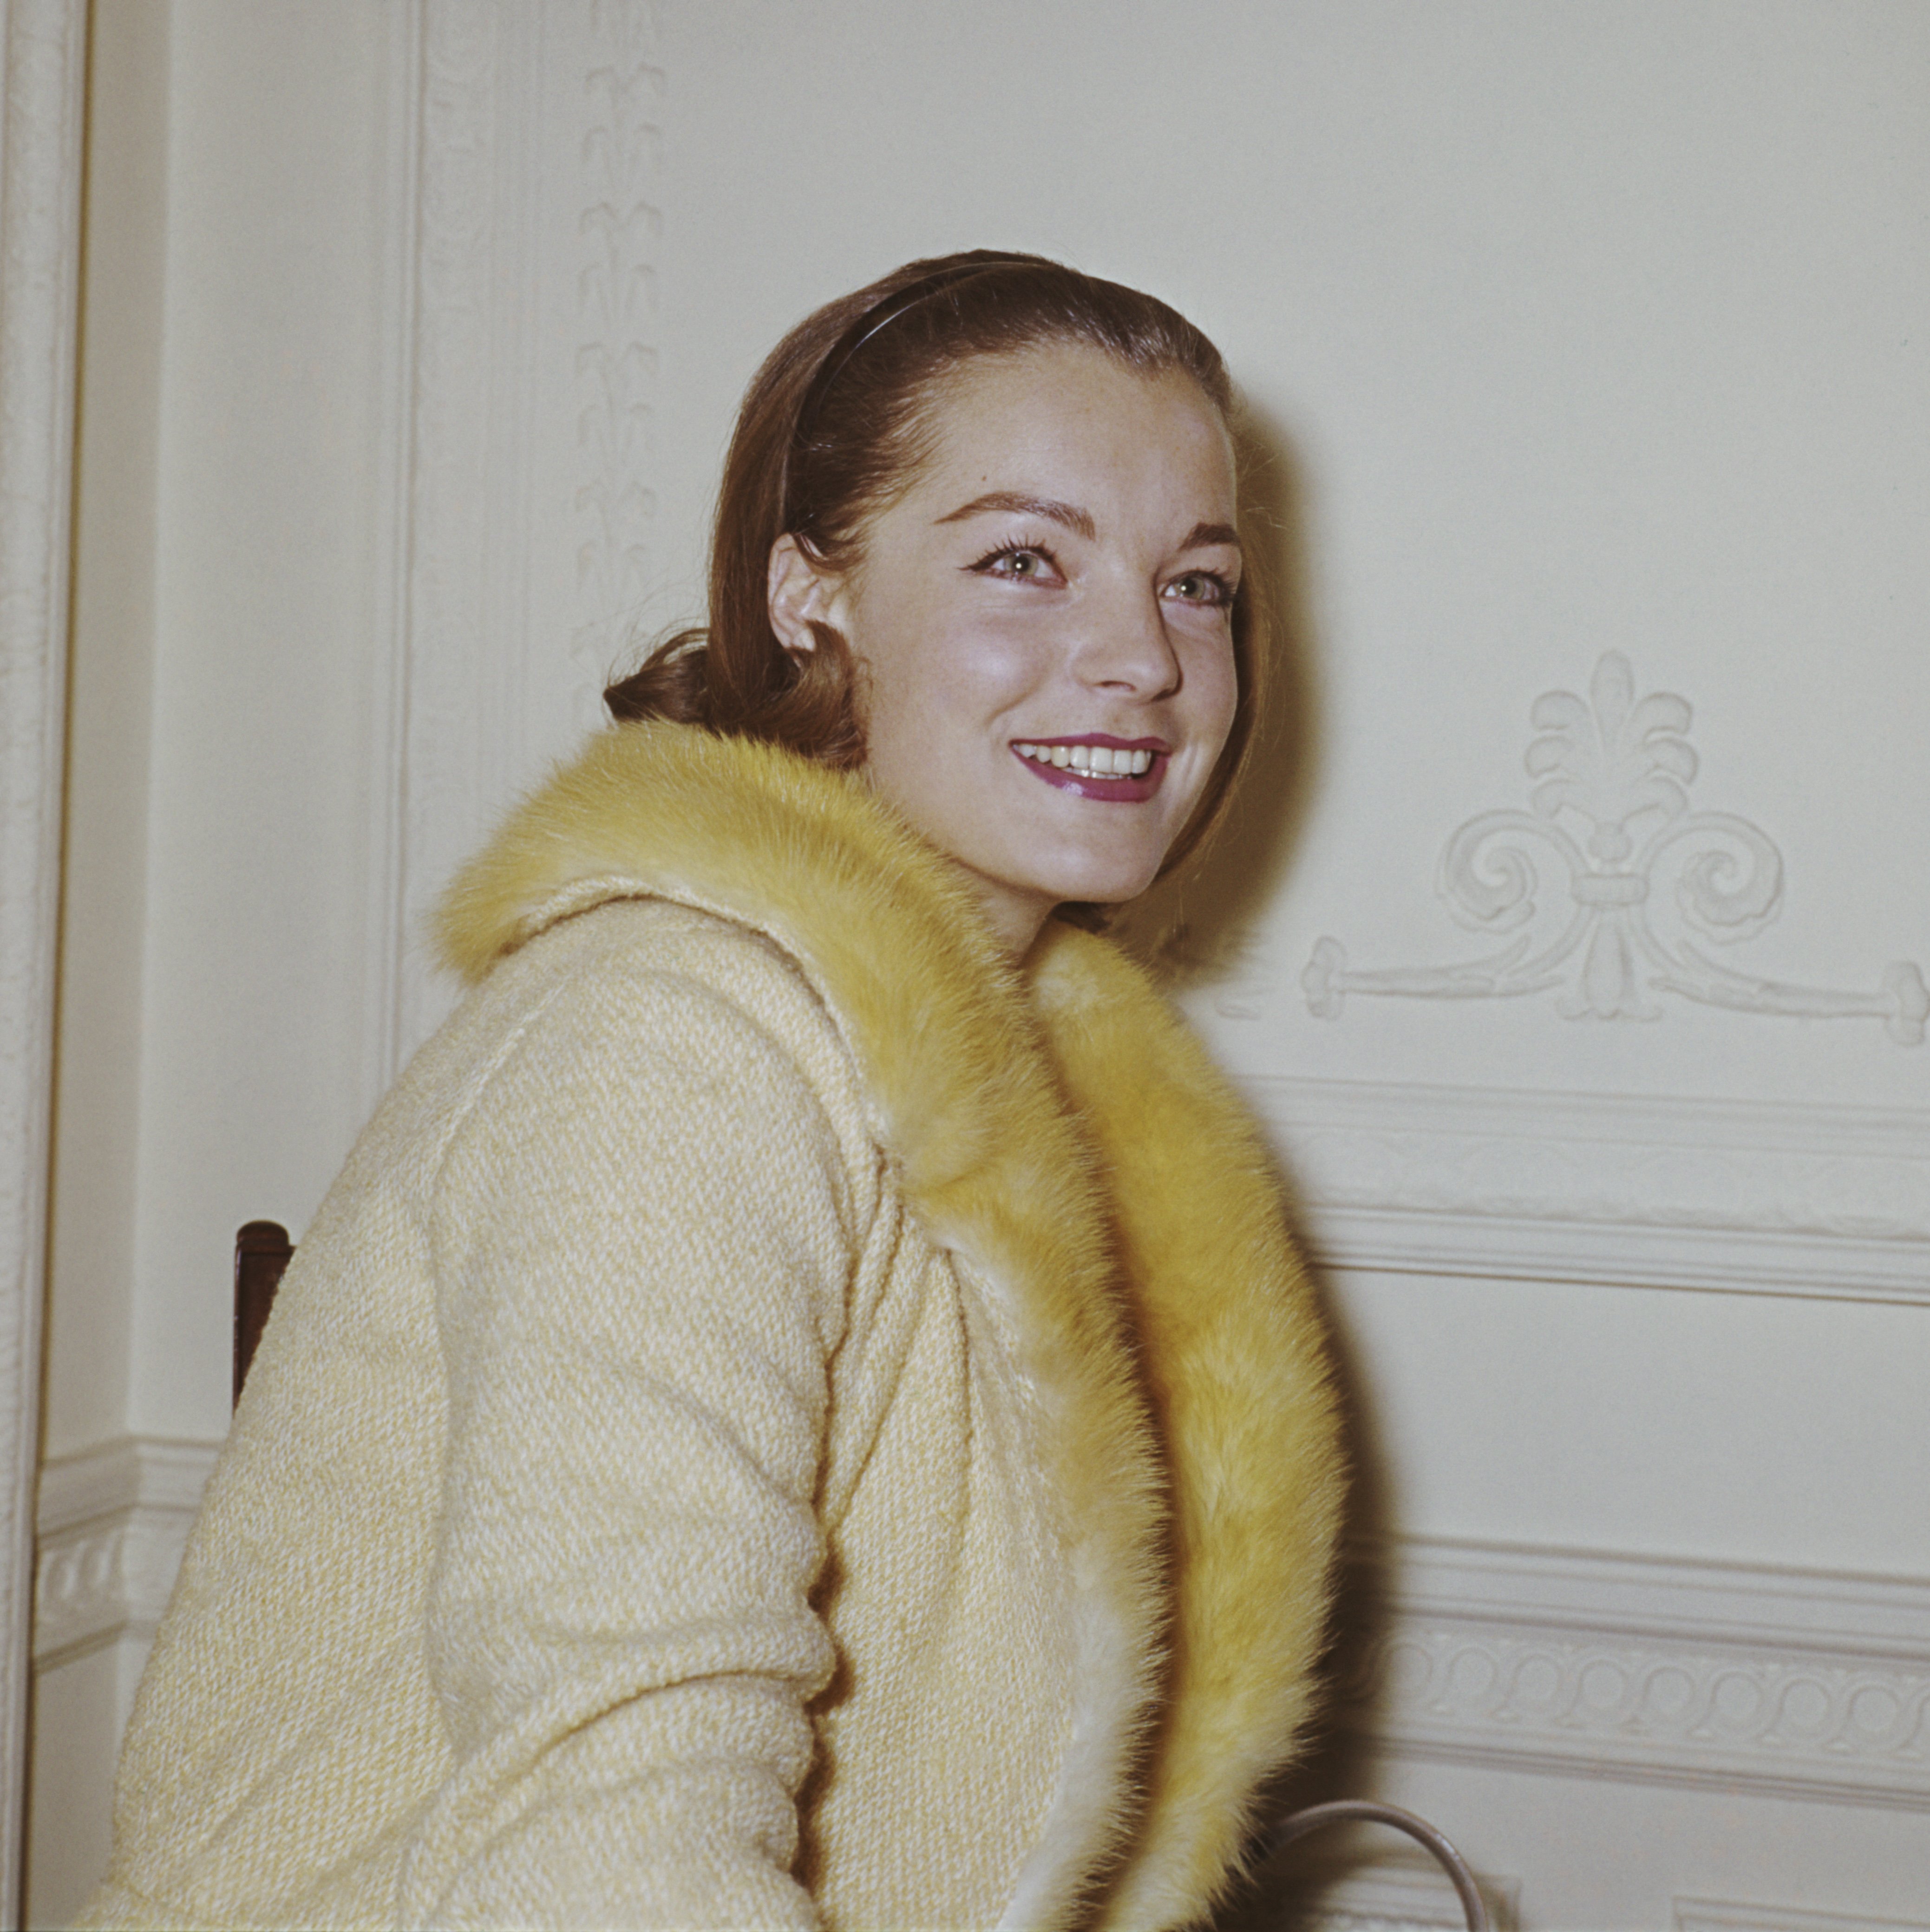 L'actrice autrichienne Romy Schneider à l'hôtel Savoy de Londres, en janvier 1964, lors d'une réception pour l'auteur du livre "Countess Tarnovska", Hans Habe. Romy a été choisie pour jouer le rôle principal dans un film tiré de ce livre. | Source : Getty Images